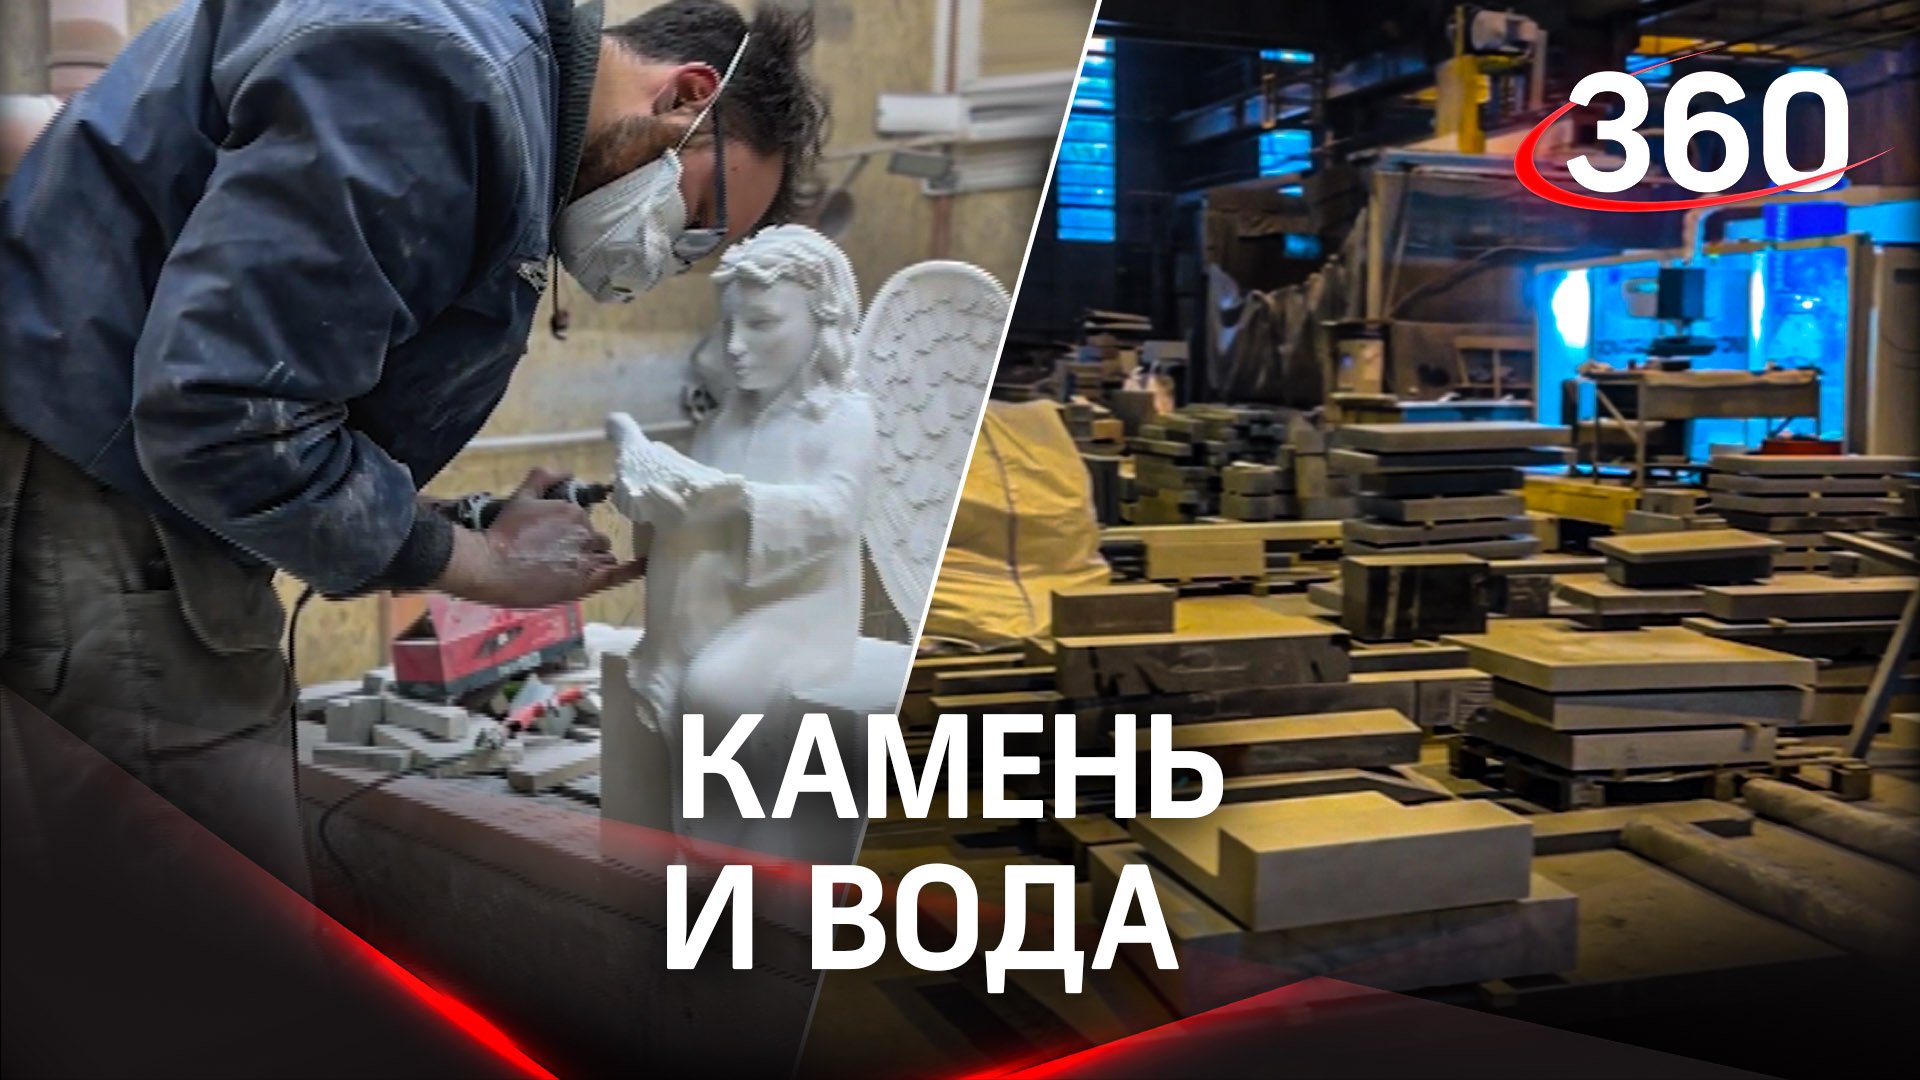 В Подмосковье скоро откроется производство каменной скульптуры